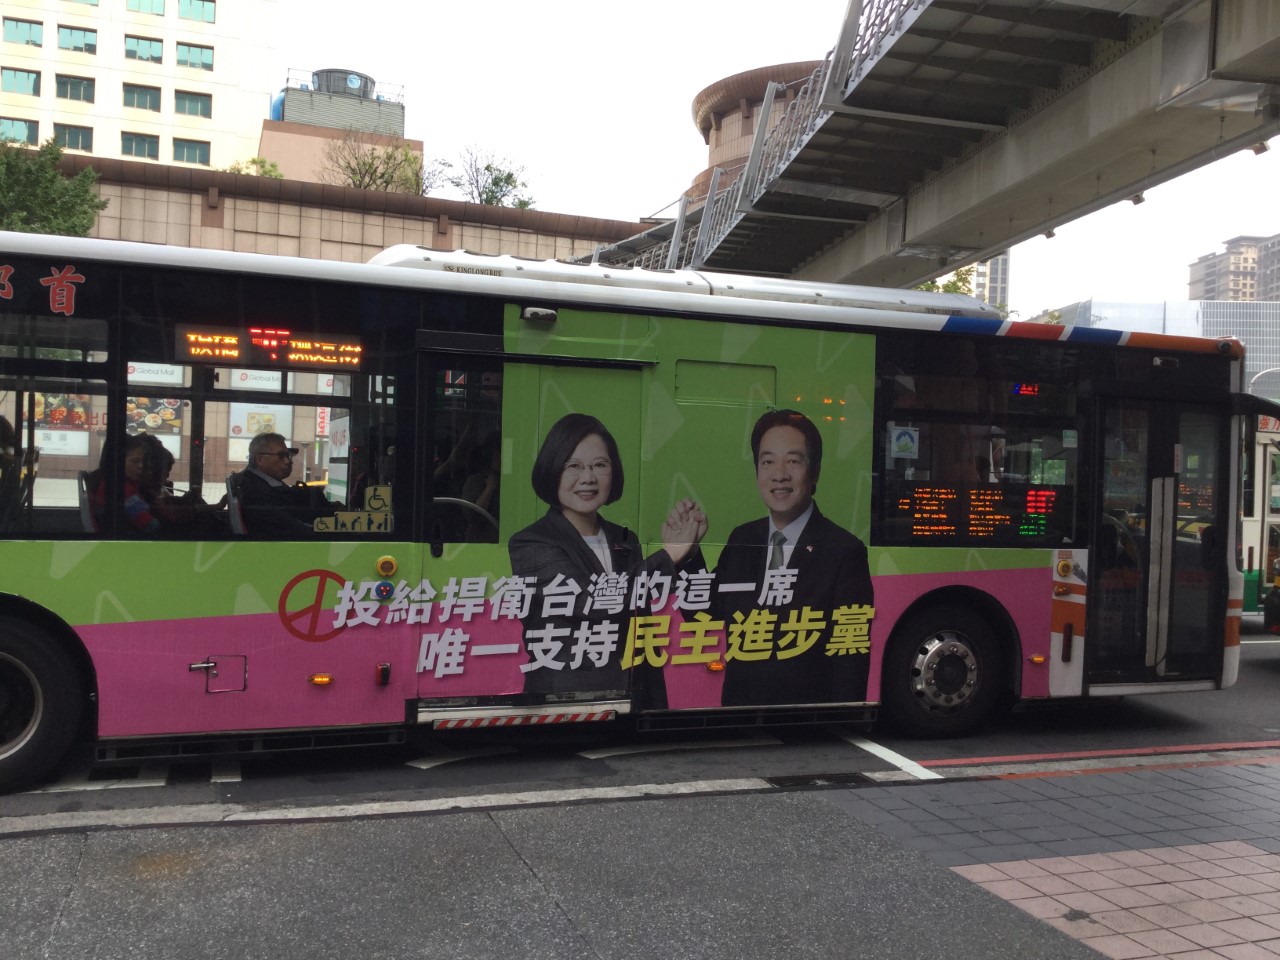 蔡英文総統と民進党立法委員候補を宣伝するラッピングバス